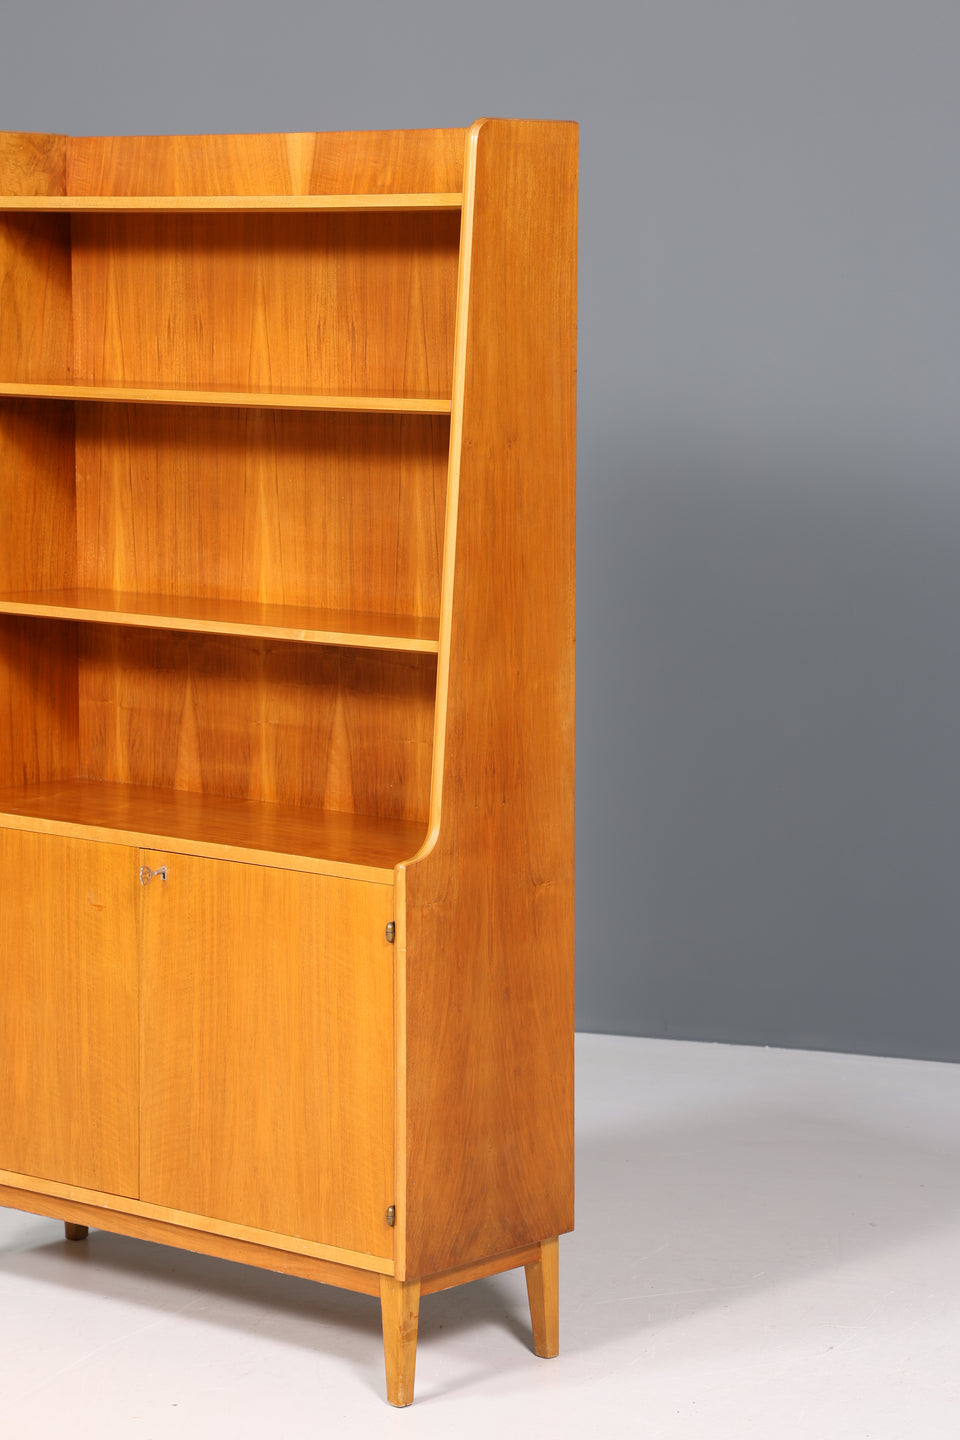 Traumhafter Mid Century Schrank Bücherregal Vintage Highboard Retro Holz Regal 60er Jahre Buchablage